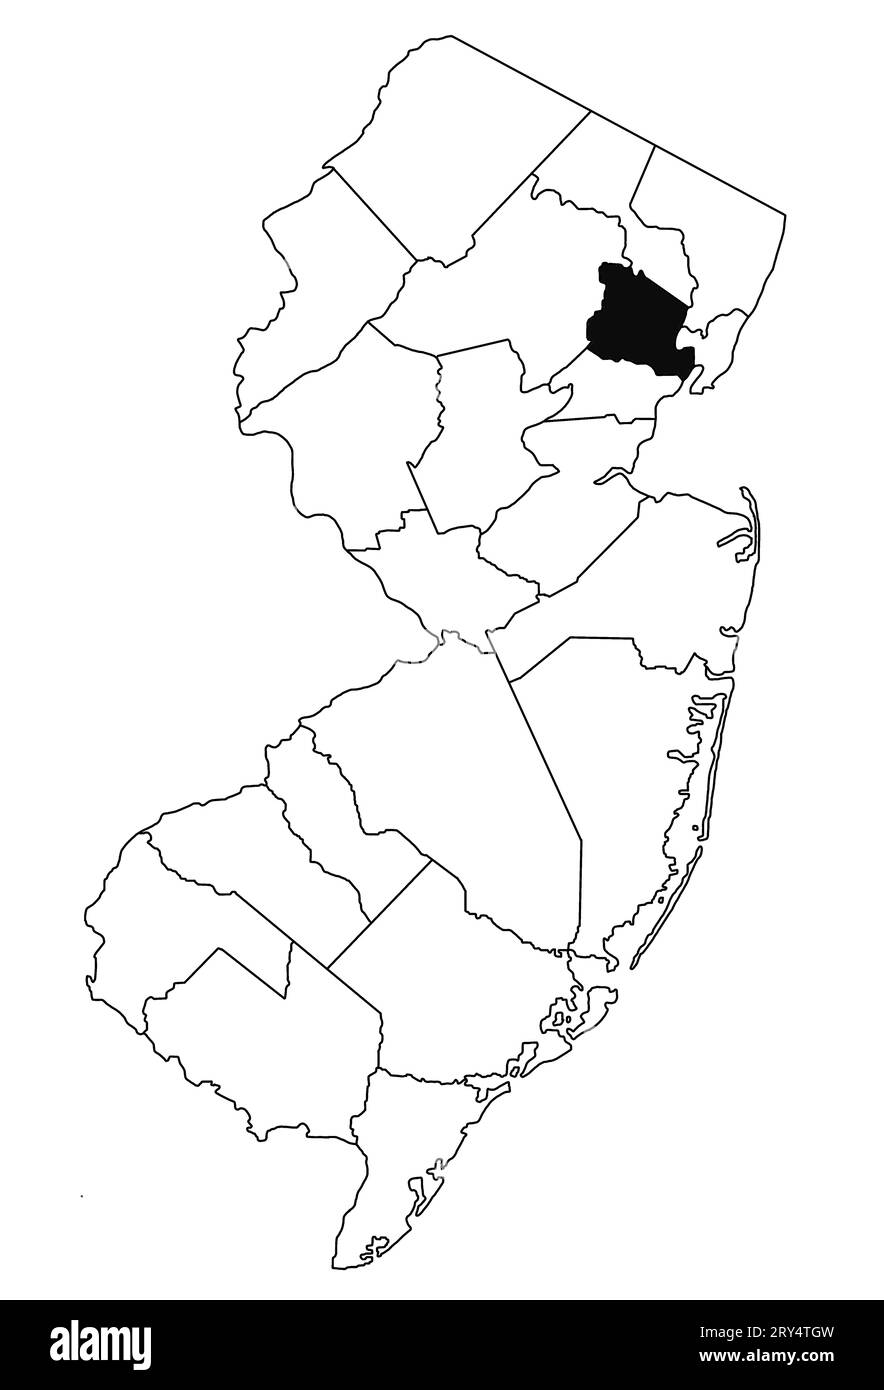 Mapa del condado de Essex en el estado de Nueva Jersey sobre fondo blanco. Mapa de Condado único resaltado por color negro en el mapa de jersey nuevo. Foto de stock